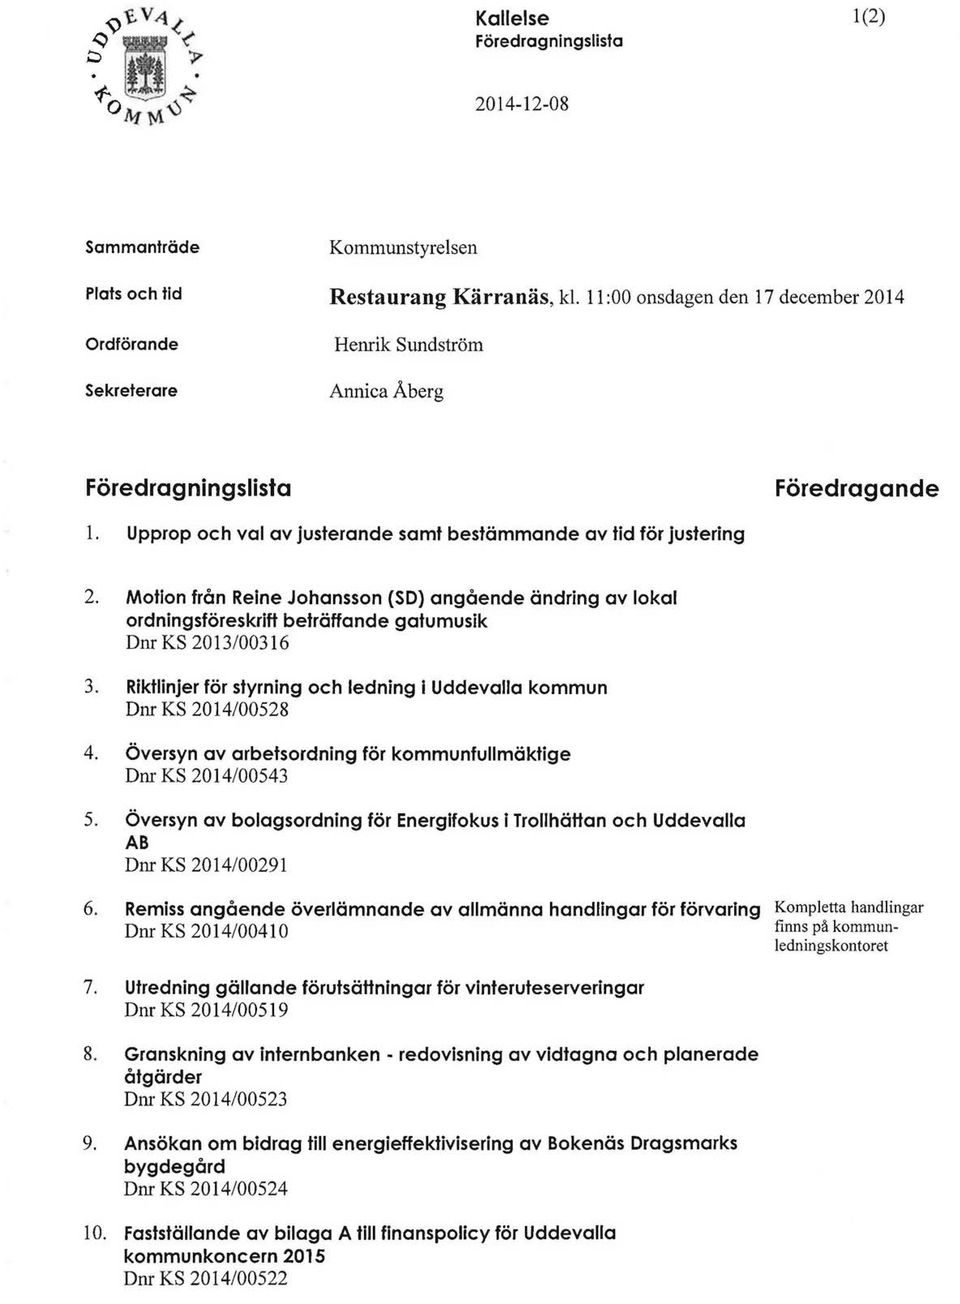 Motlon från Reine Johansson (SD) angående ändring av lokal ordningsföreskrift beträffande gatumusik D nr KS 2013/00316 3. Riktlinjer för styrning och ledning i Uddevalla kommun Dnr KS 2014/00528 4.